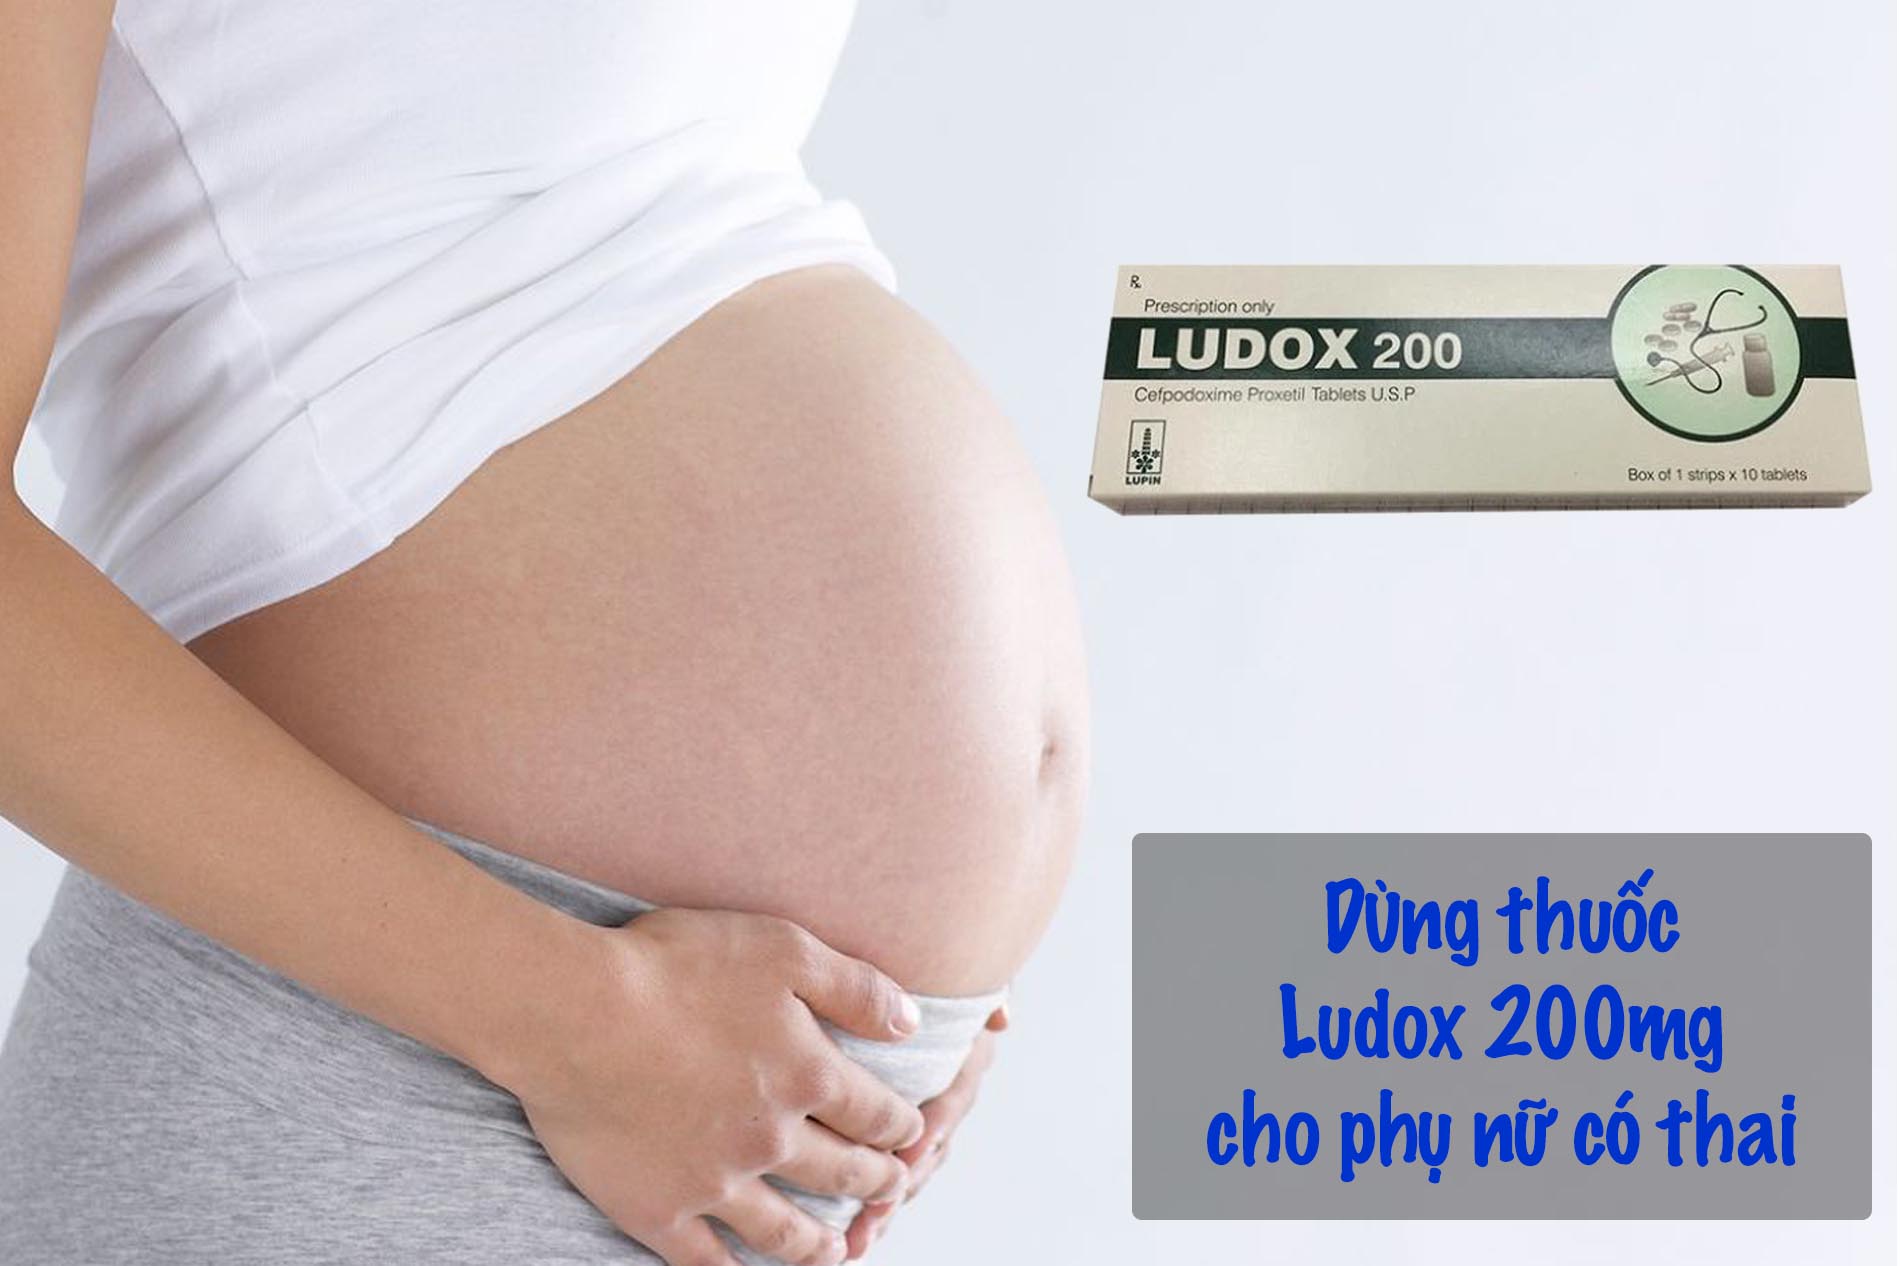 Ludox 200mg có thể sử dụng cho phụ nữ có thai không?